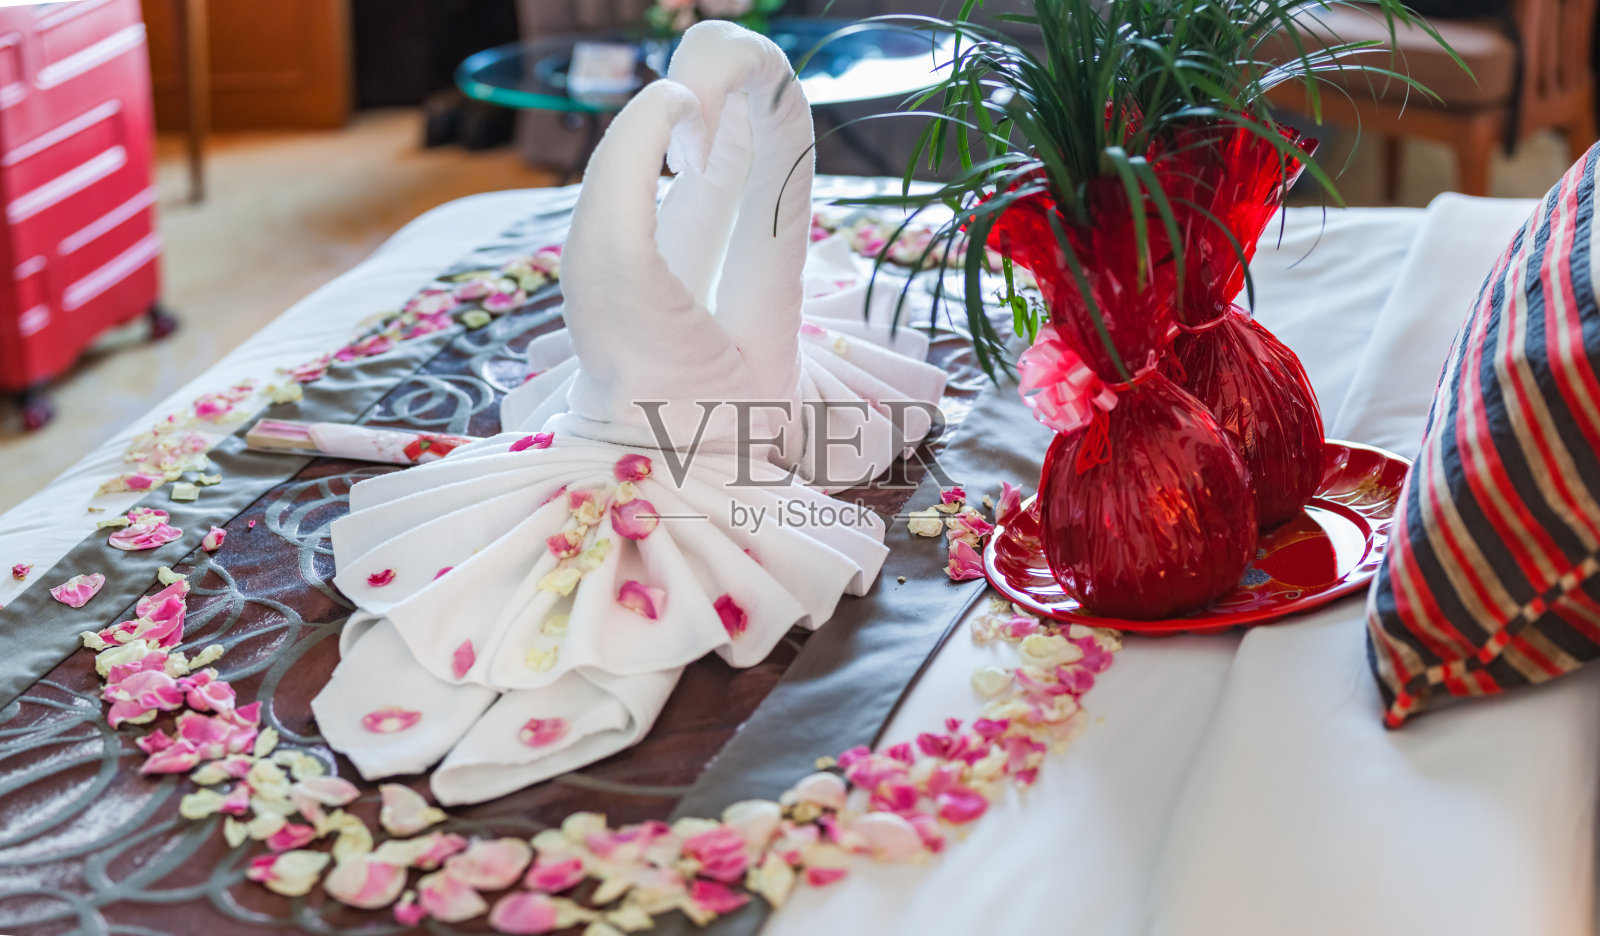 浪漫的卧室内饰，亲吻天鹅折纸毛巾和洒在床上的新鲜粉白玫瑰花瓣装饰。婚礼，周年纪念，蜜月，爱，象征概念照片摄影图片